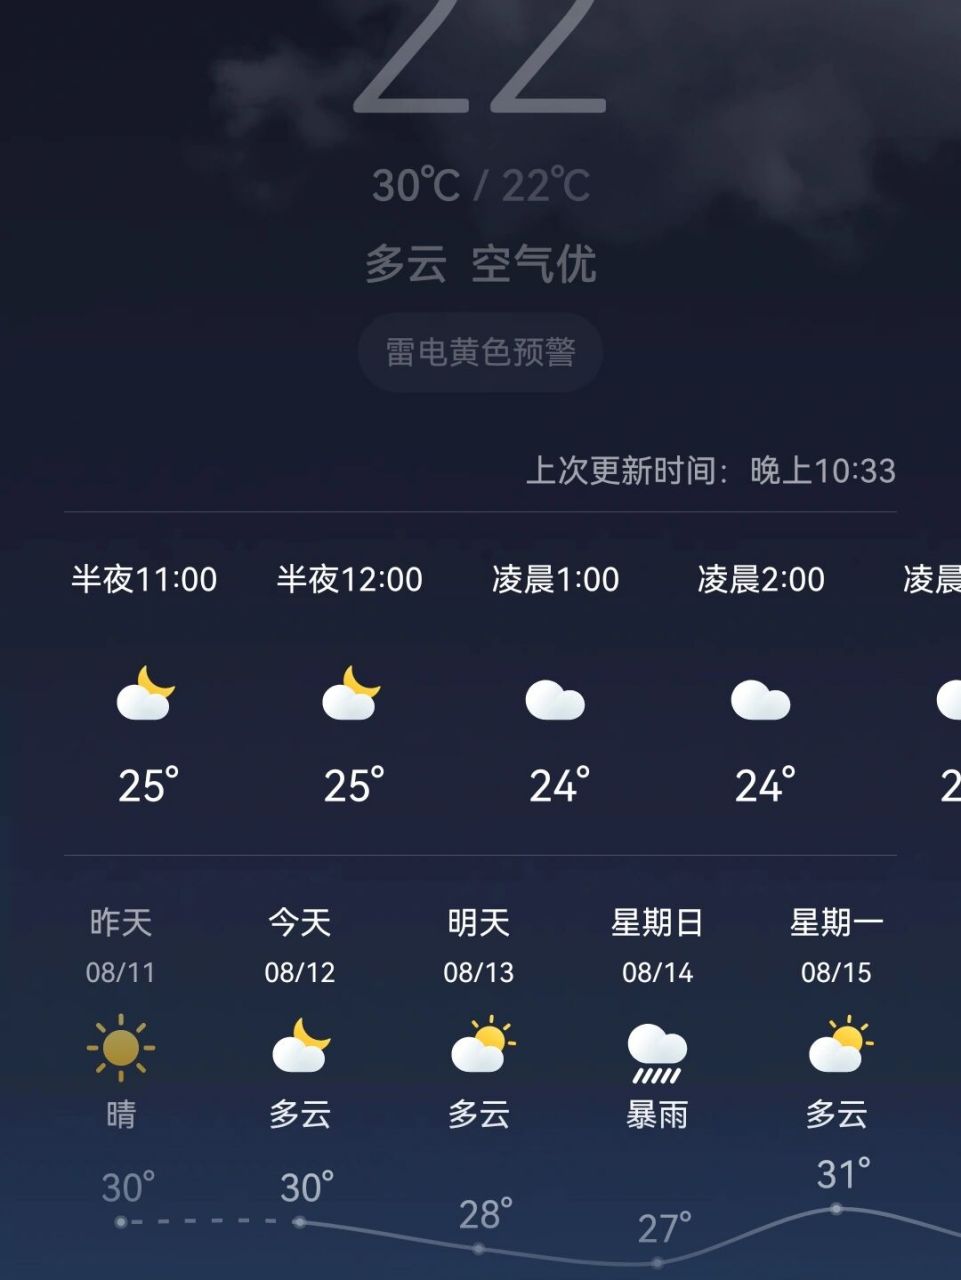 秦皇岛天气预报准不准,周天说有暴雨,酒店已经订好了还能不能去,推荐